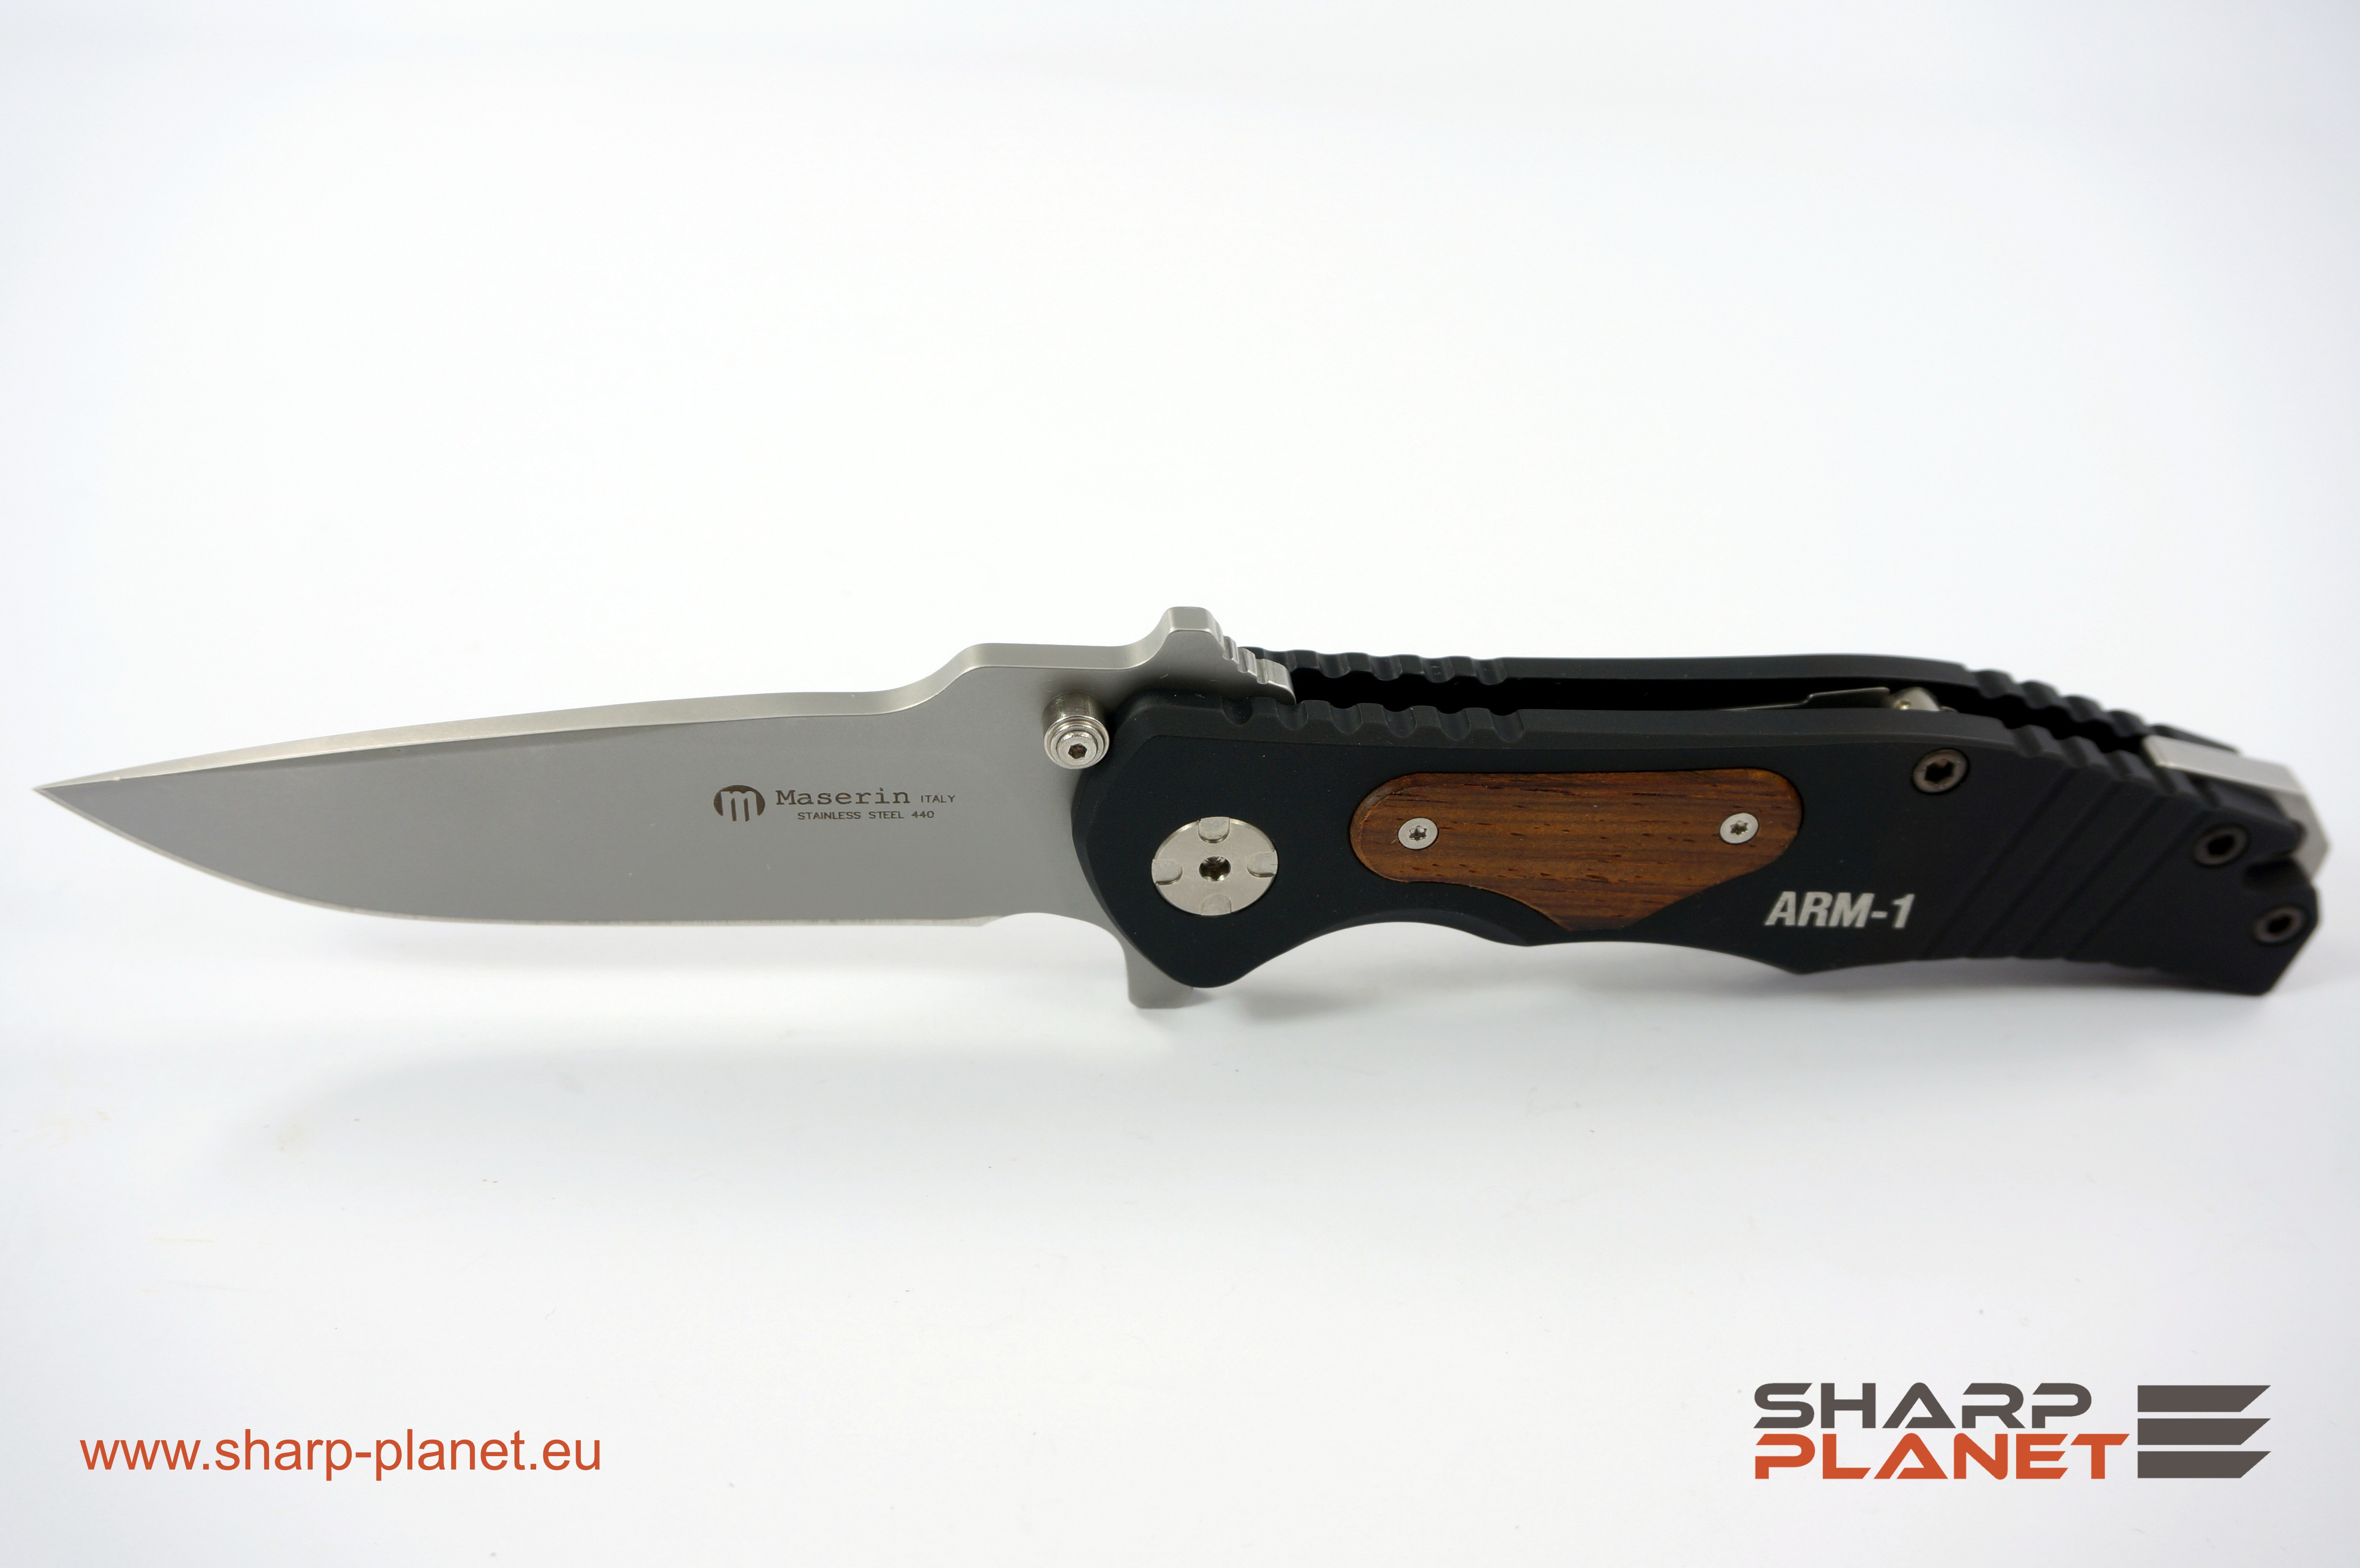 Maserin Arm-1 knife - Sharp Blog